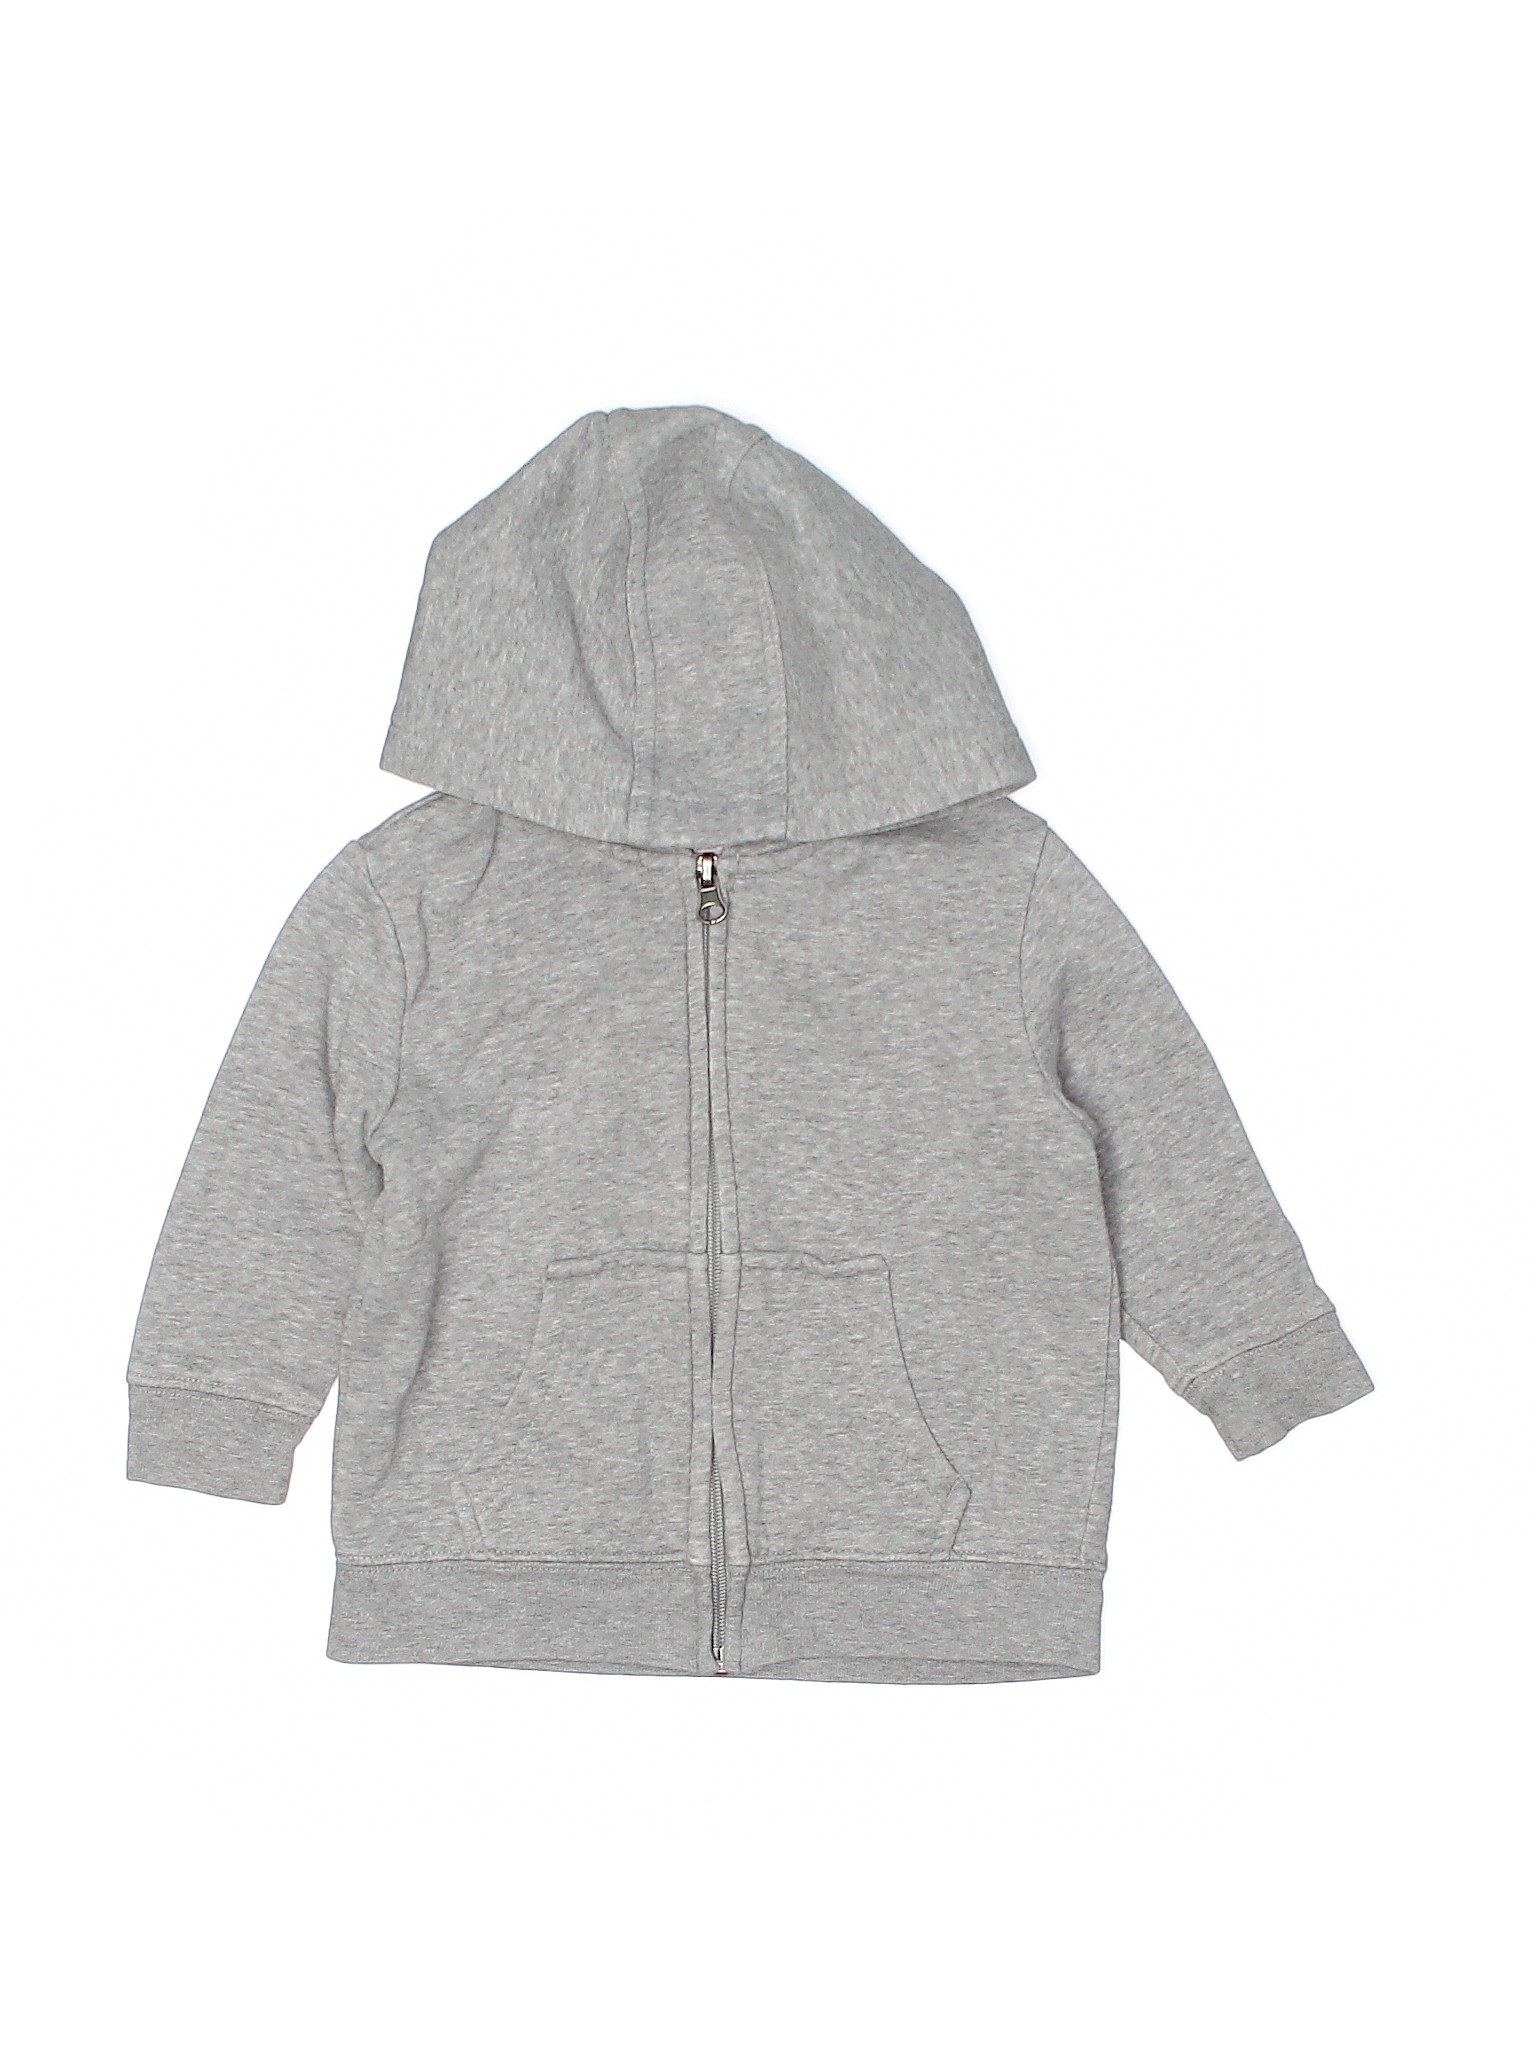 Assorted Brands Boys Gray Zip Up Hoodie 12-18 Months | eBay